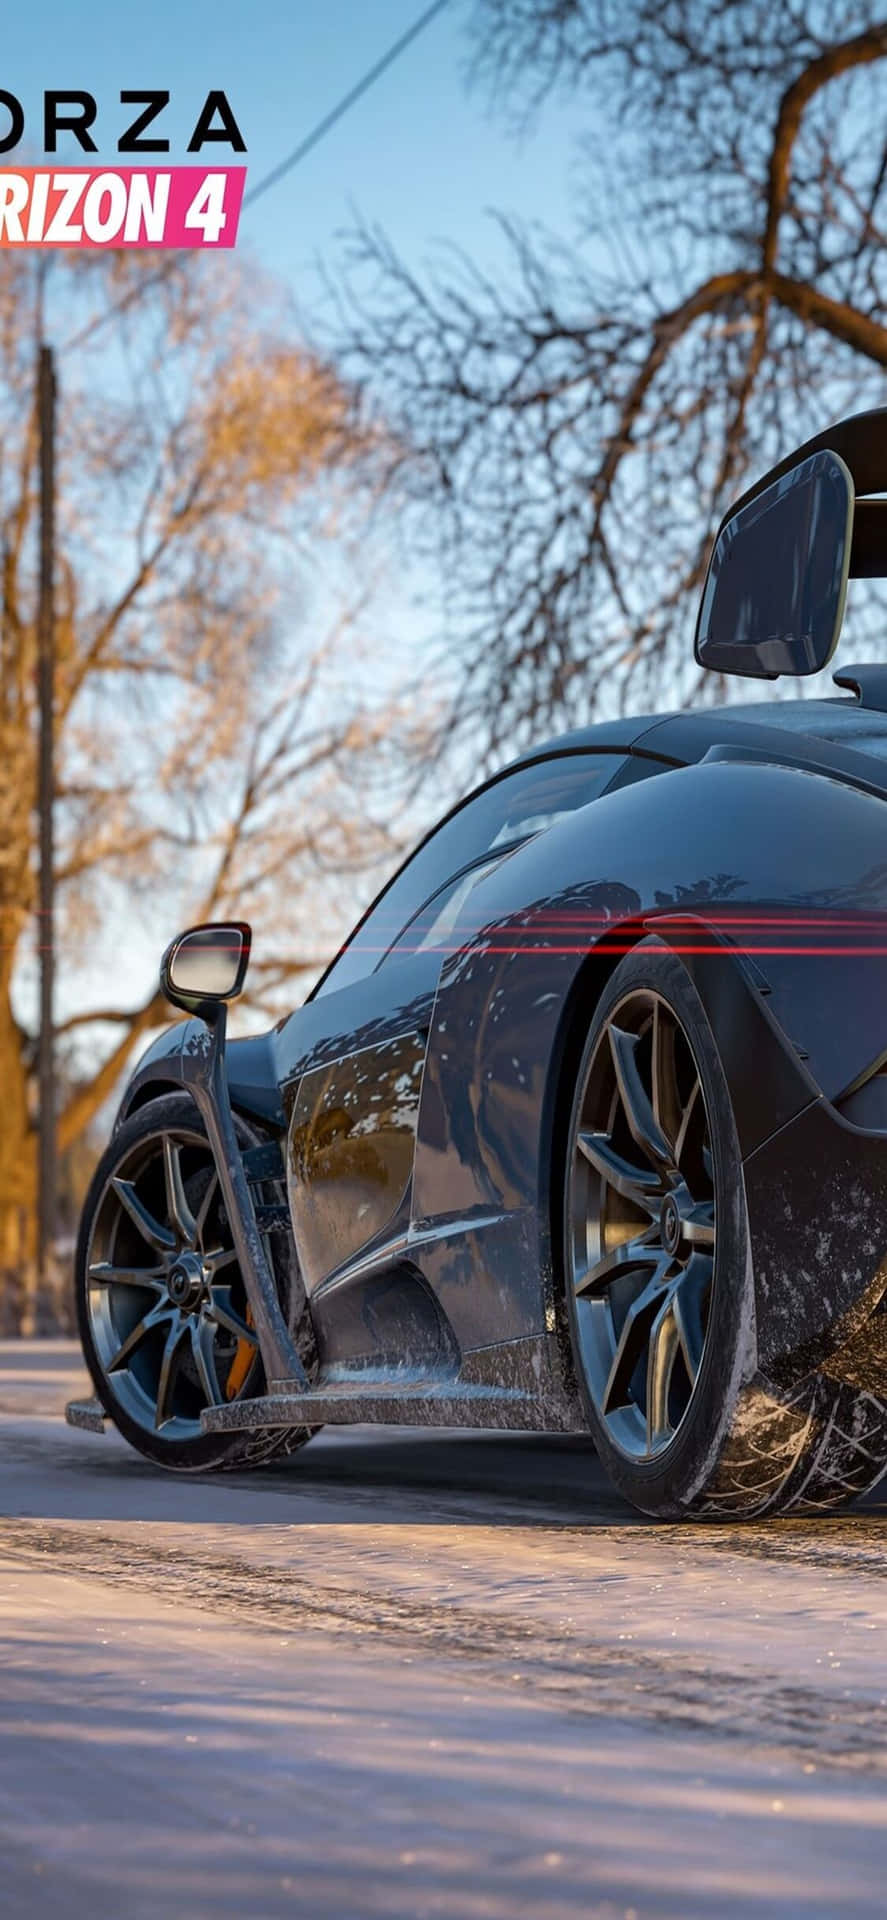 Schwarzeraudi Iphone X Hintergrund Für Forza Motorsport 7.